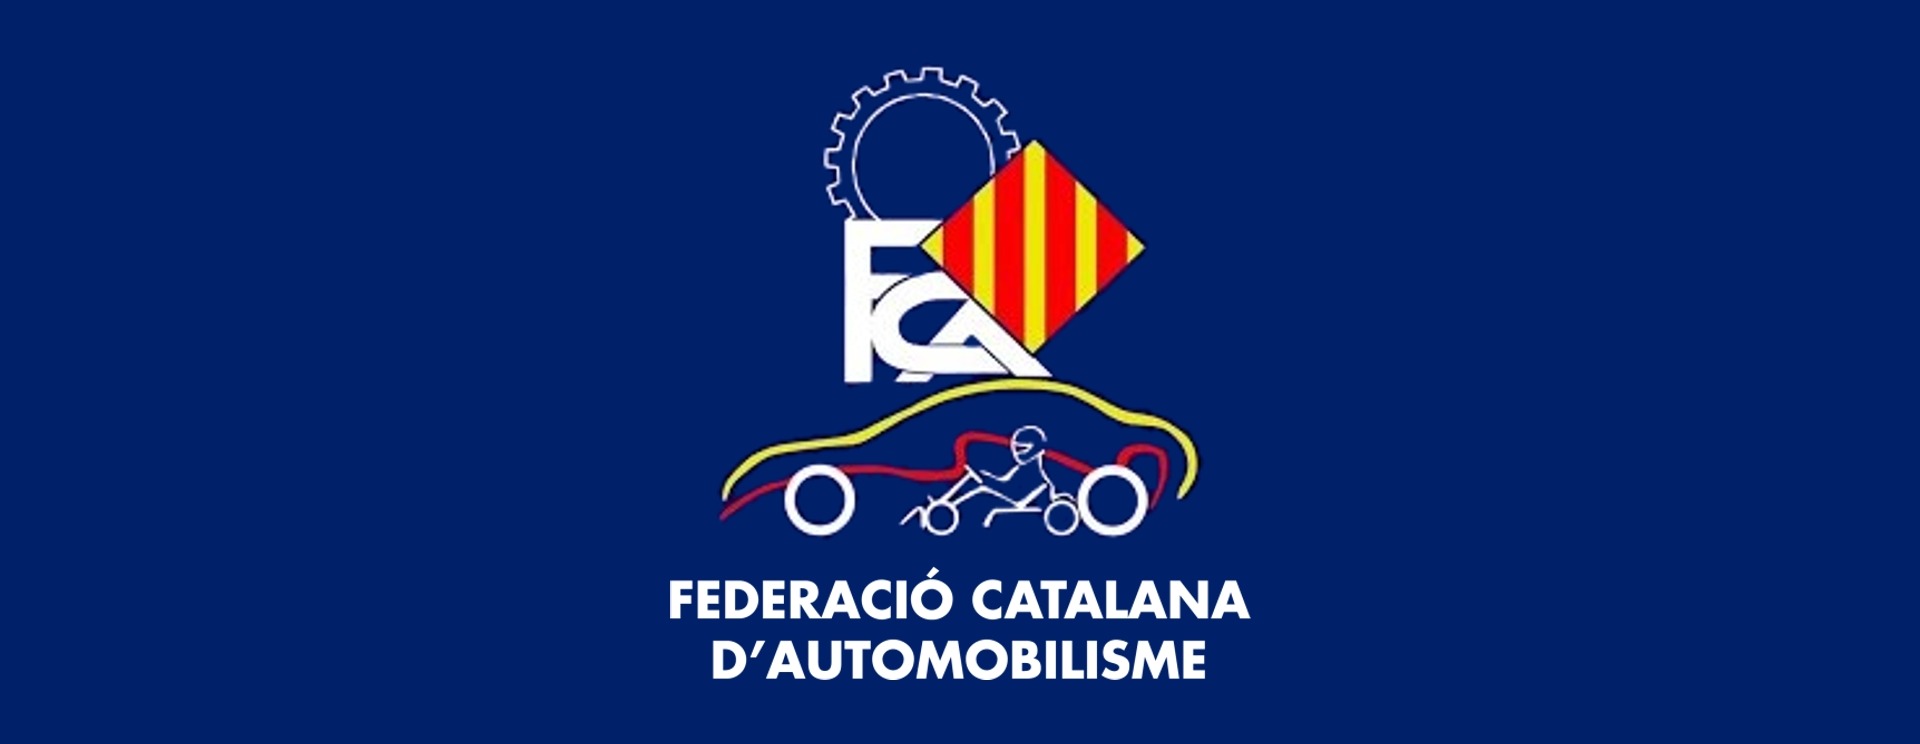 Torna el Campionat de Catalunya de Velocitat en Circuits